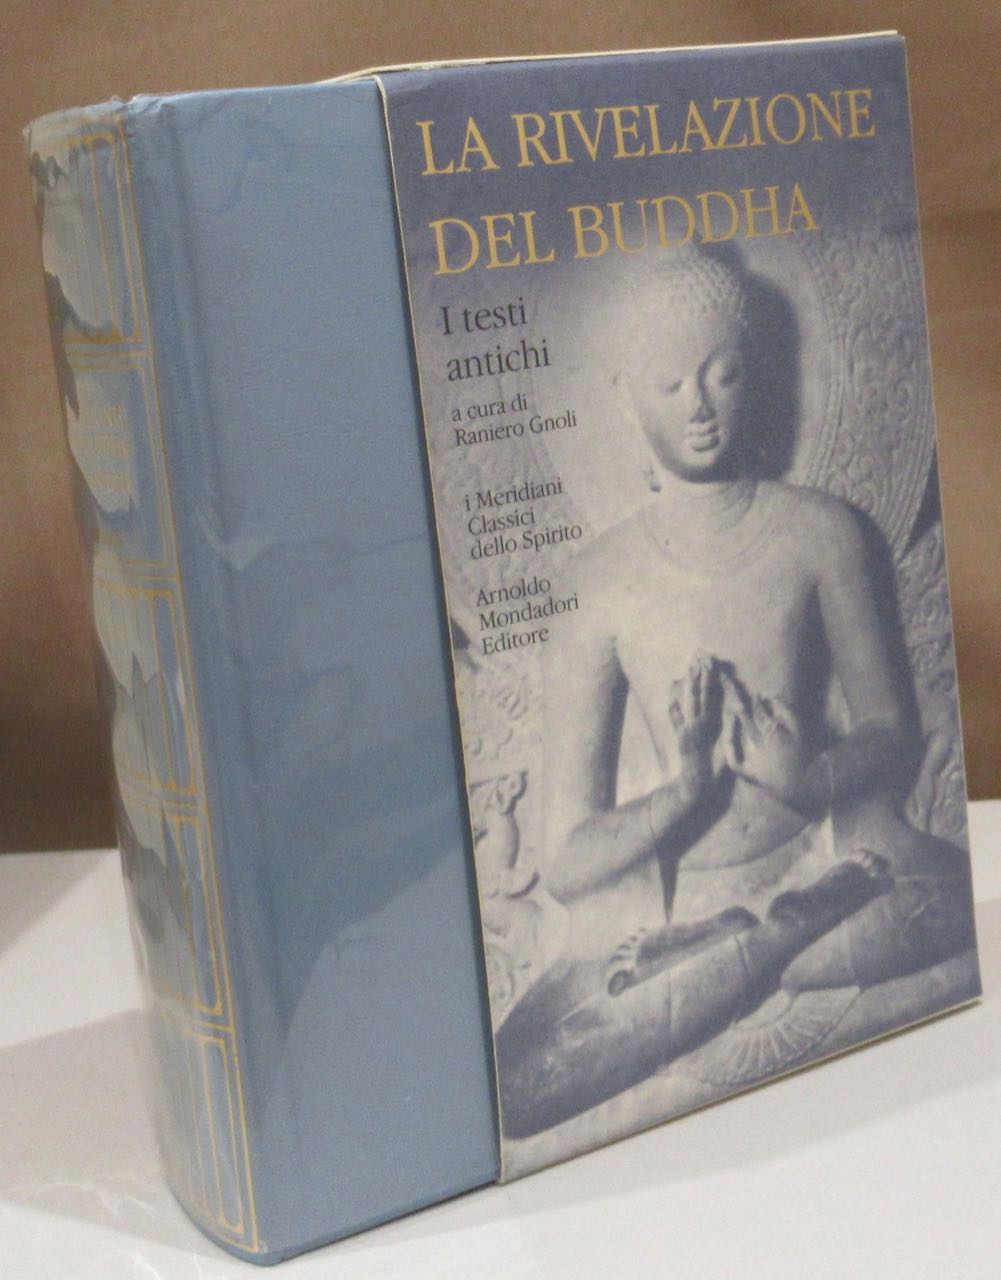 La rivelazione del Buddha. Band 1: I testi antichi. A cura e con un saggio introduttivo di Raniero Gnoli. - Buddha, Gautama.